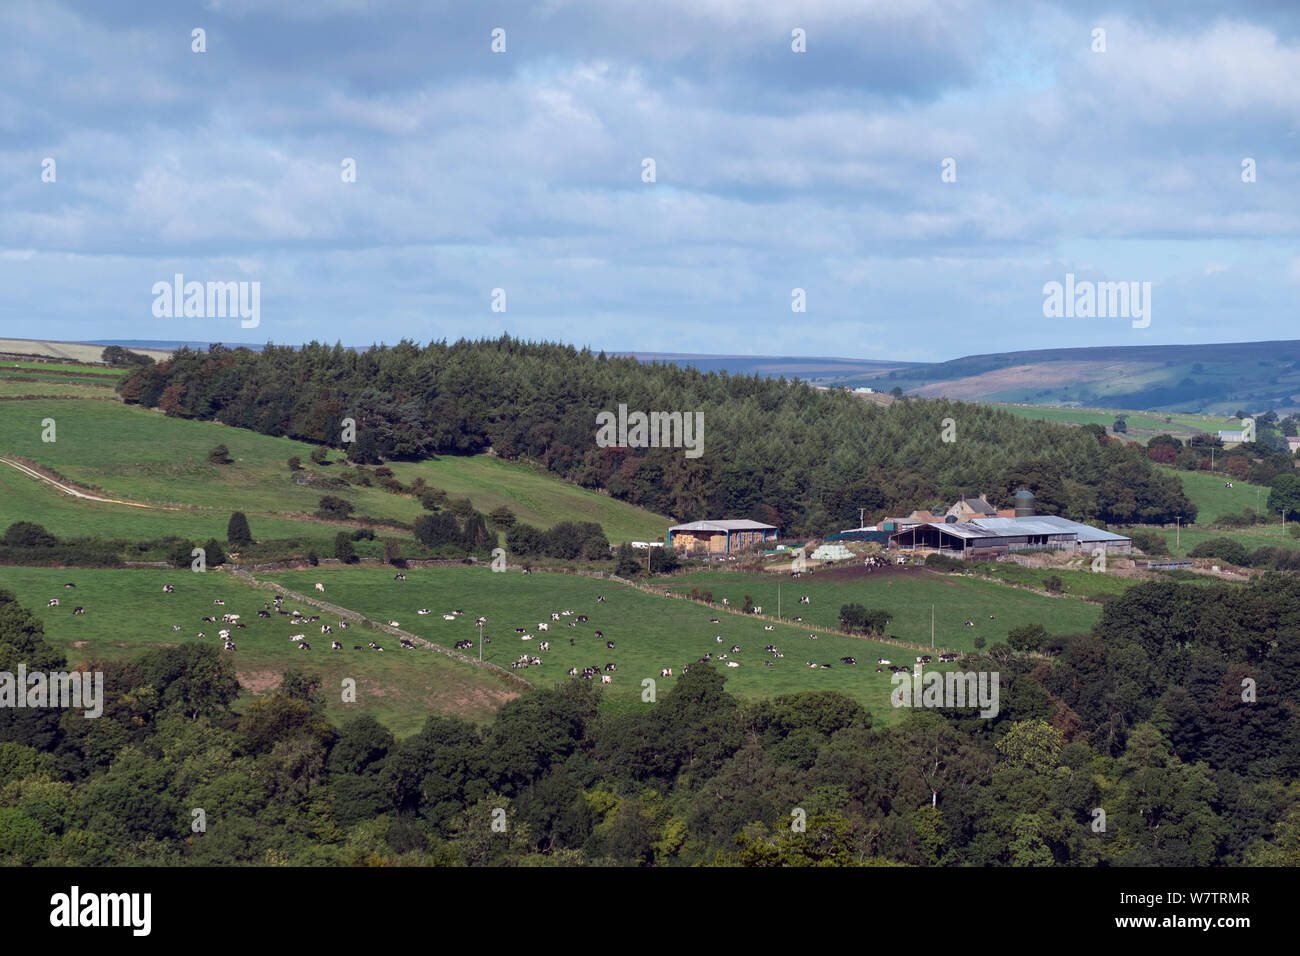 Ausblick auf die Landschaft mit landwirtschaftlichen Gebäuden, Weide Weide und Hochmoore in Distanz, North York Moors National Park, England, UK, September 2013. Stockfoto